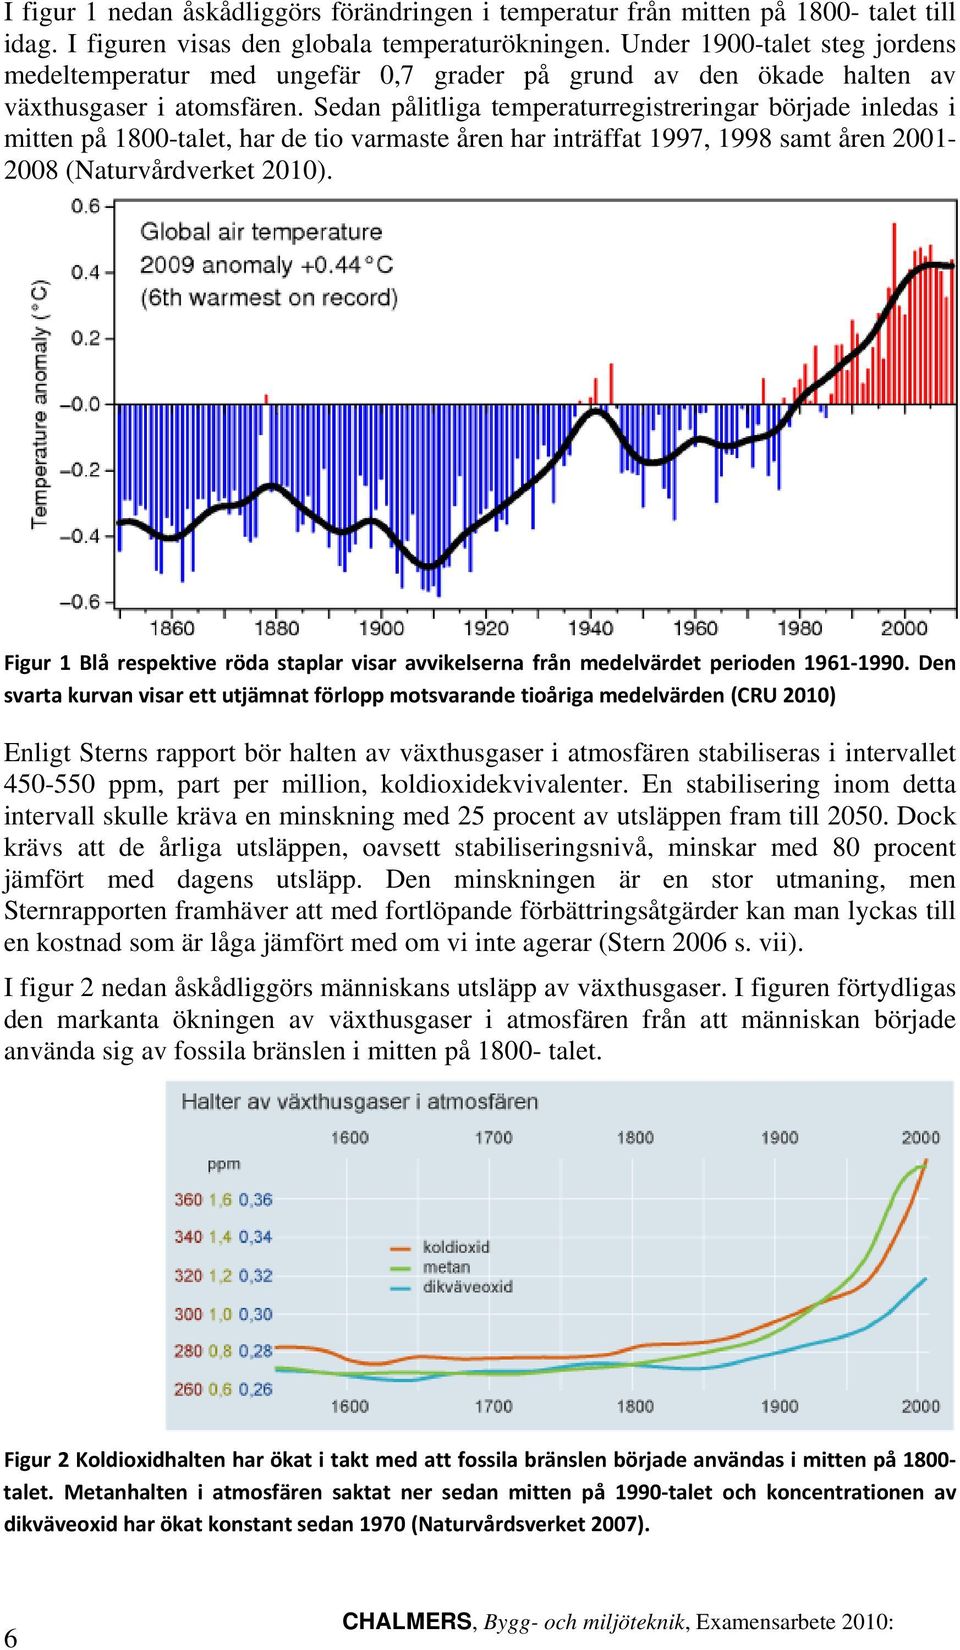 Sedan pålitliga temperaturregistreringar började inledas i mitten på 1800-talet, har de tio varmaste åren har inträffat 1997, 1998 samt åren 2001-2008 (Naturvårdverket 2010).